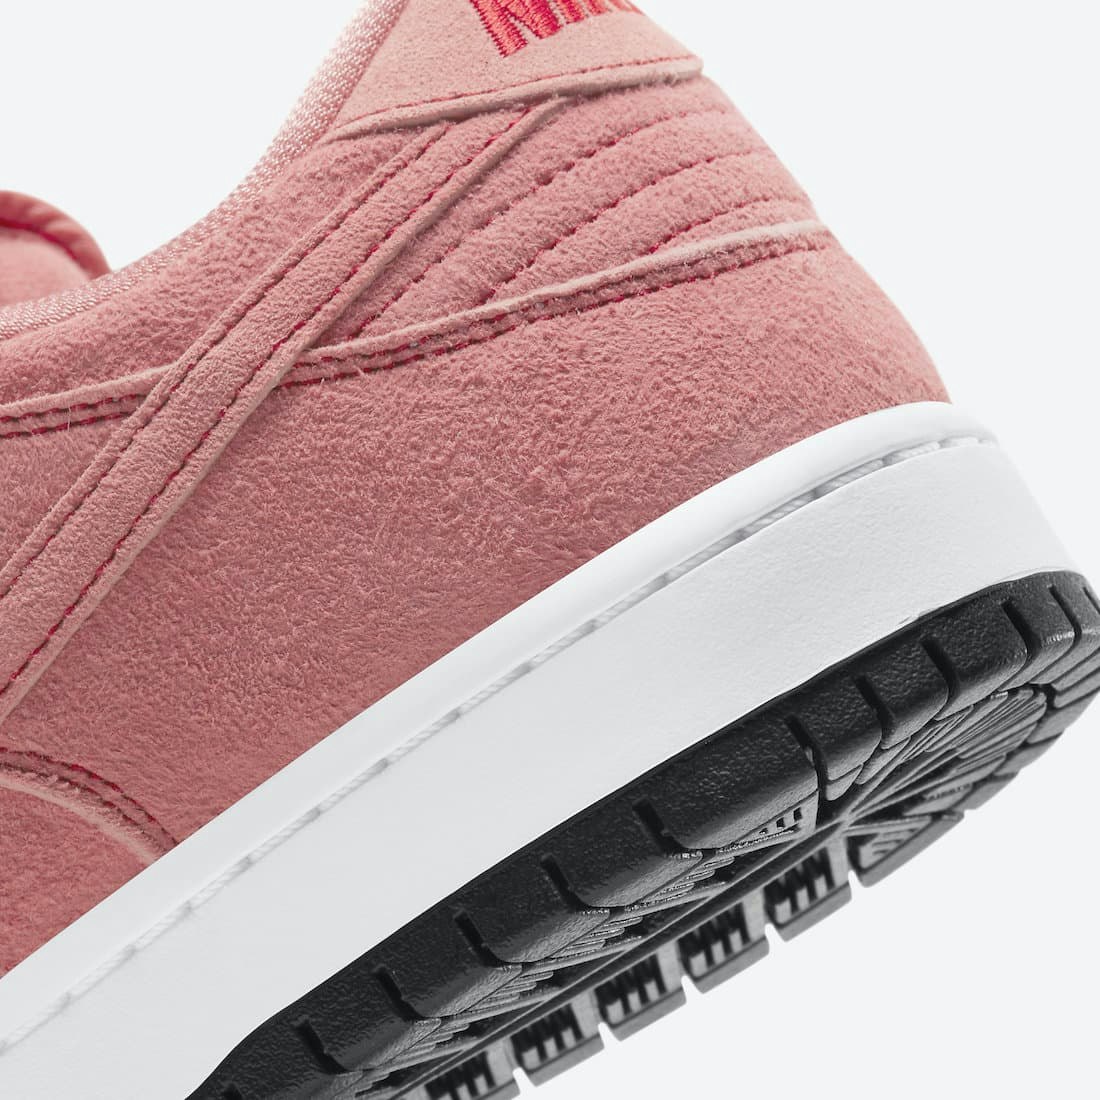 Nike SB Dunk Low “Pink Pig”